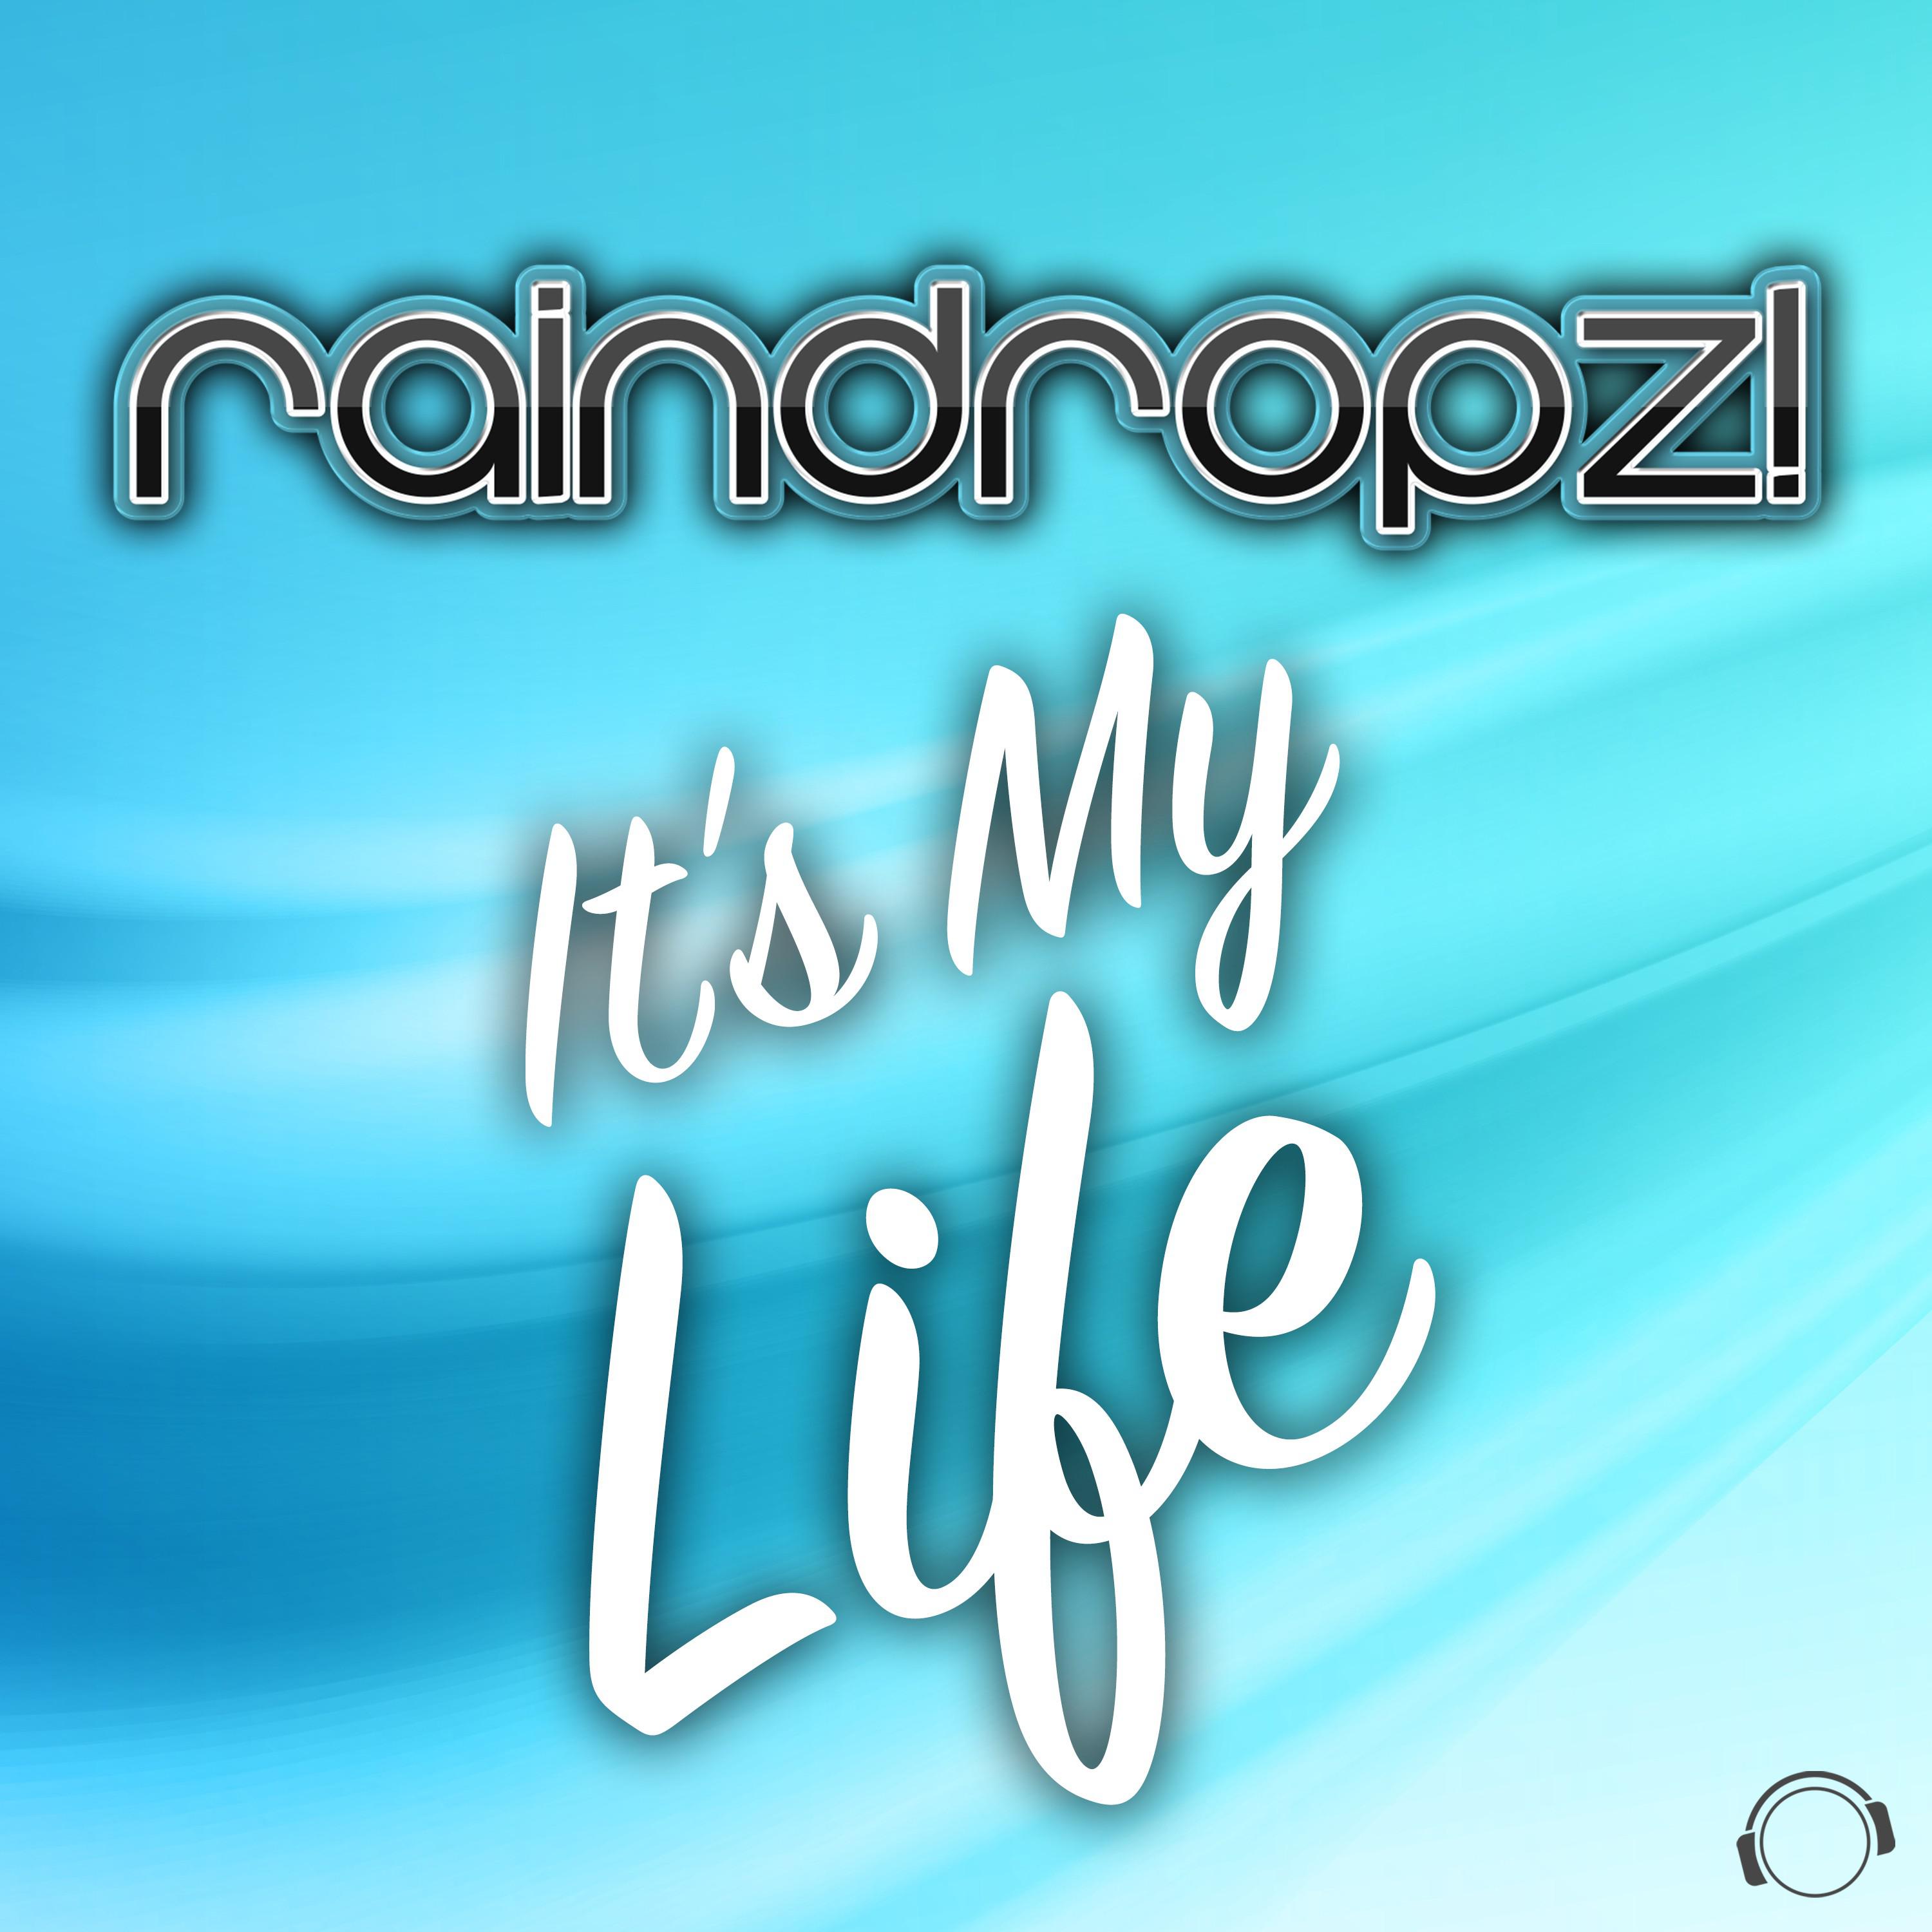 Raindropz! - It's My Life (Rave Mix)